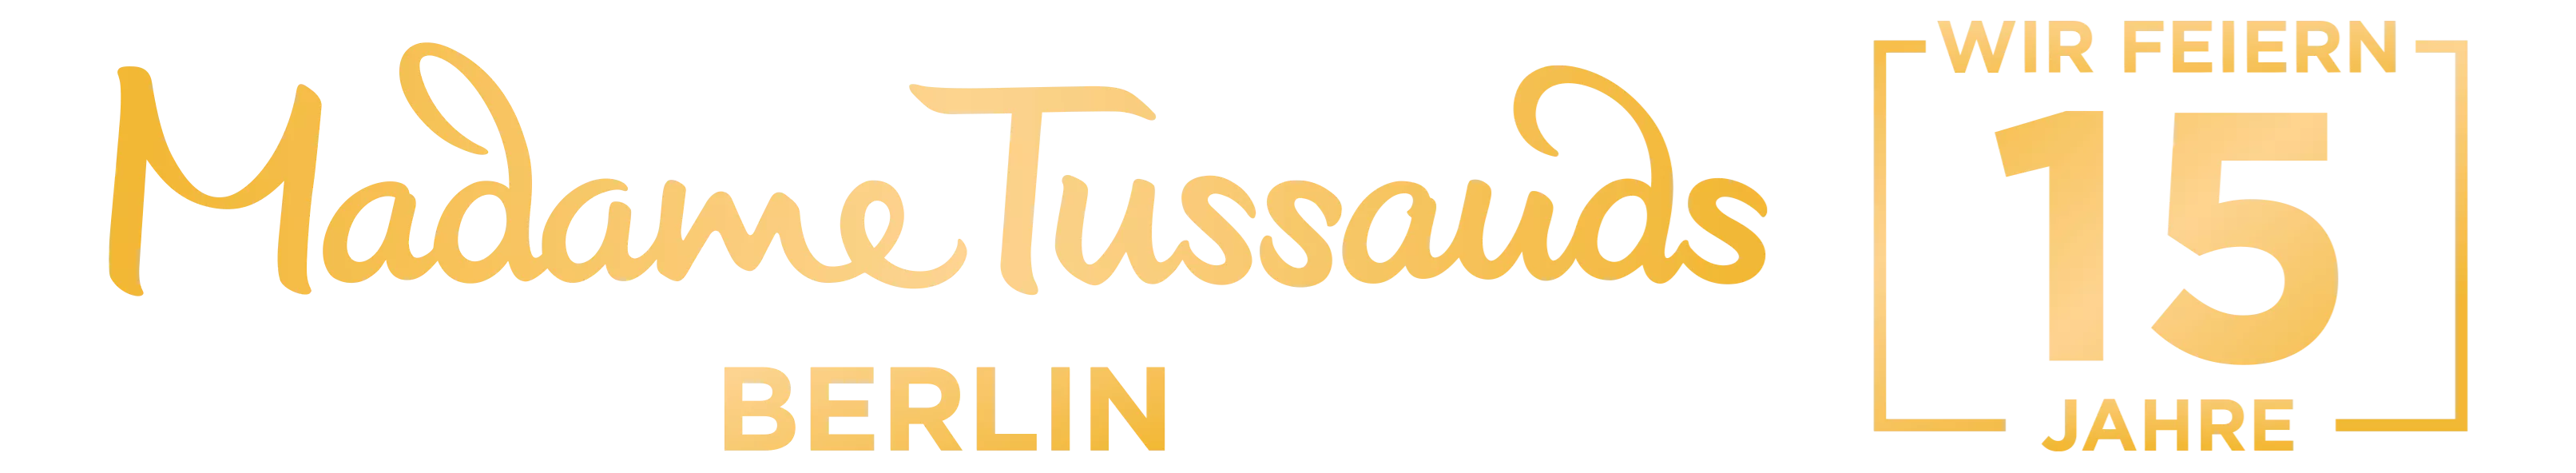 Madame Tussauds Berlin Jubiläum 15 Jahre